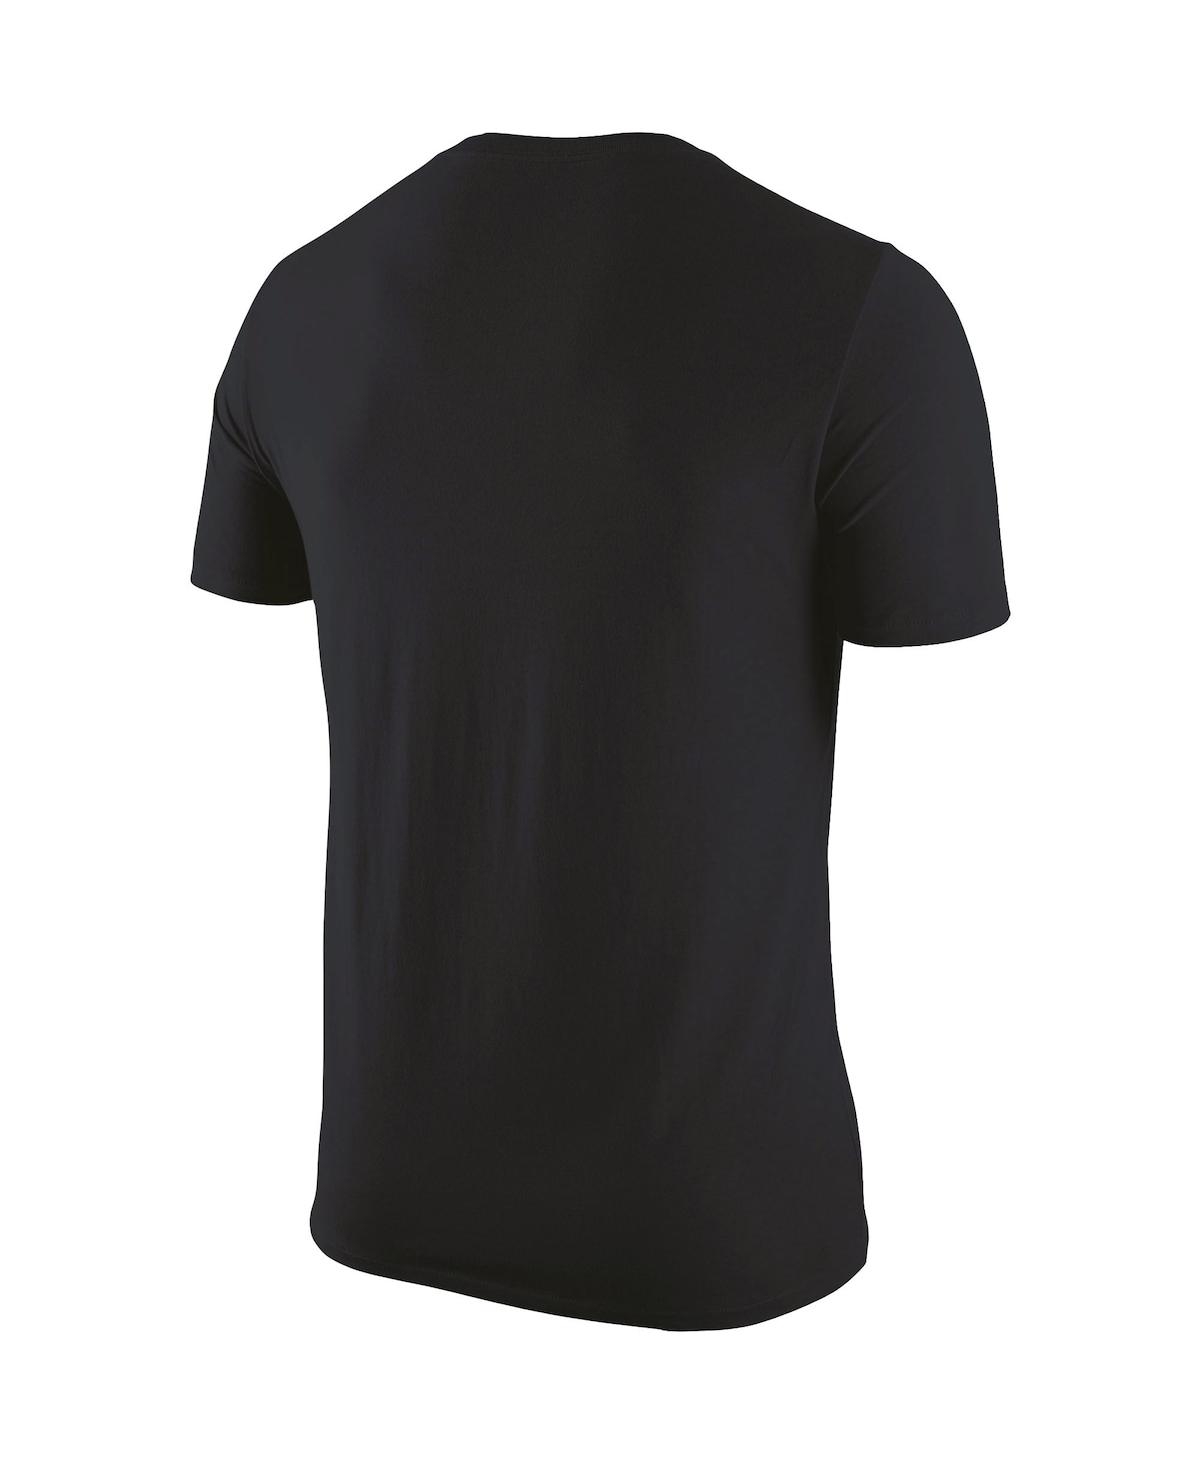 Shop Nike Men's  Black Texas Longhorns Logo Color Pop T-shirt